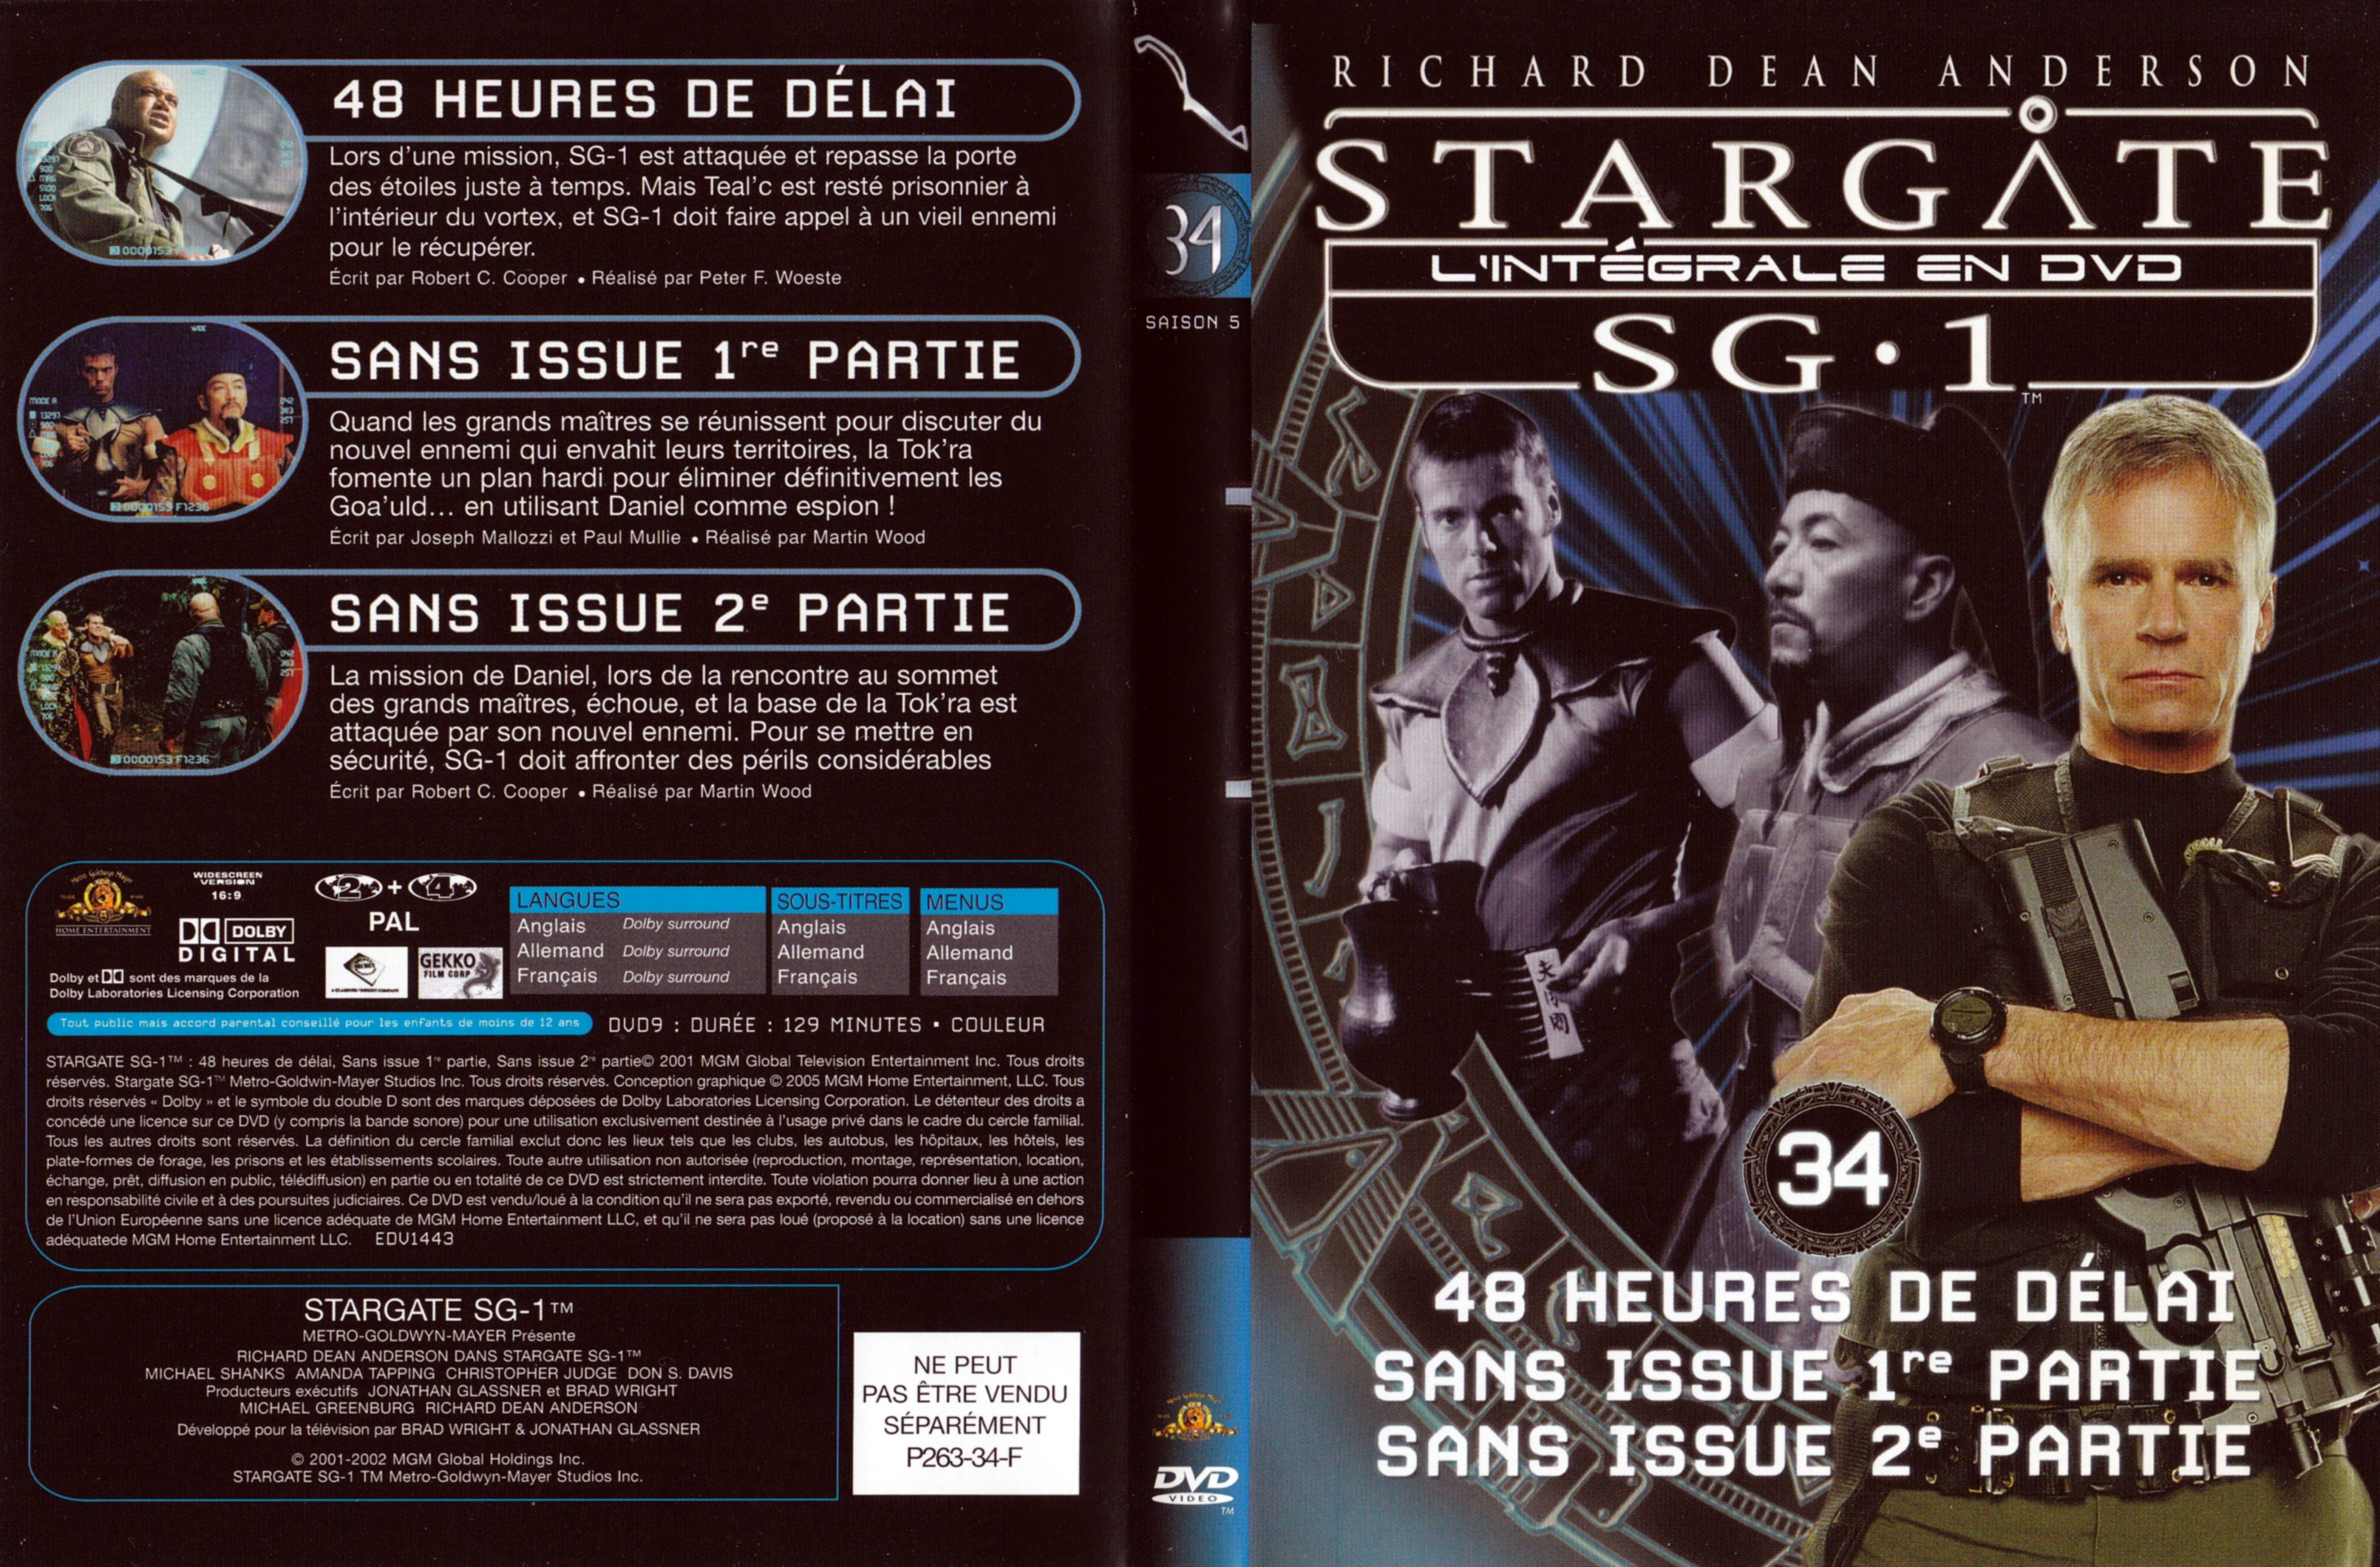 Jaquette DVD Stargate SG1 Intgrale Saison 5 vol 34